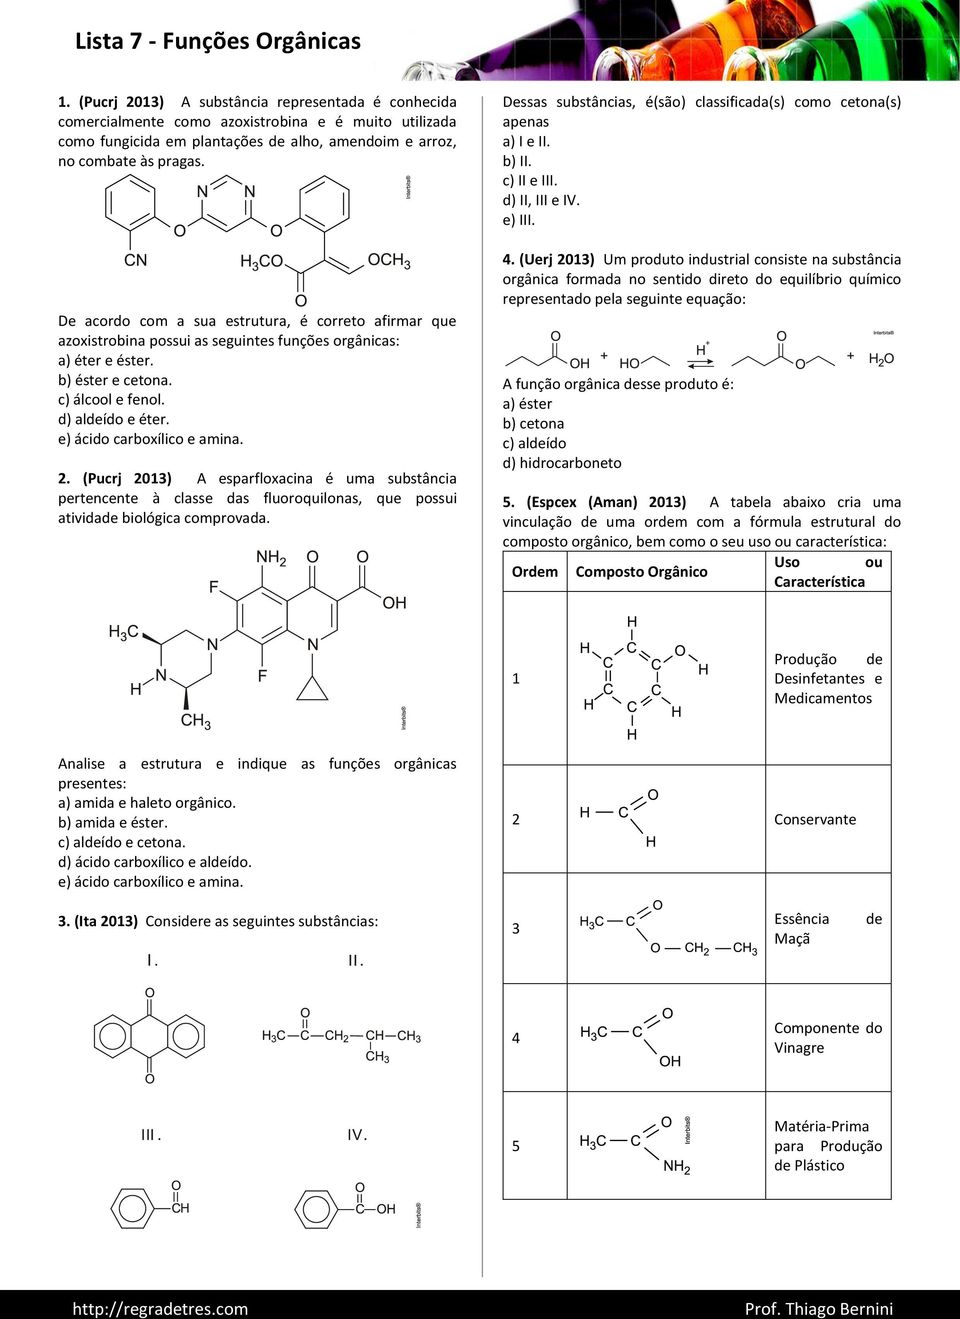 e) ácido carboxílico e amina. 2. (Pucrj 2013) A esparfloxacina é uma substância pertencente à classe das fluoroquilonas, que possui atividade biológica comprovada.